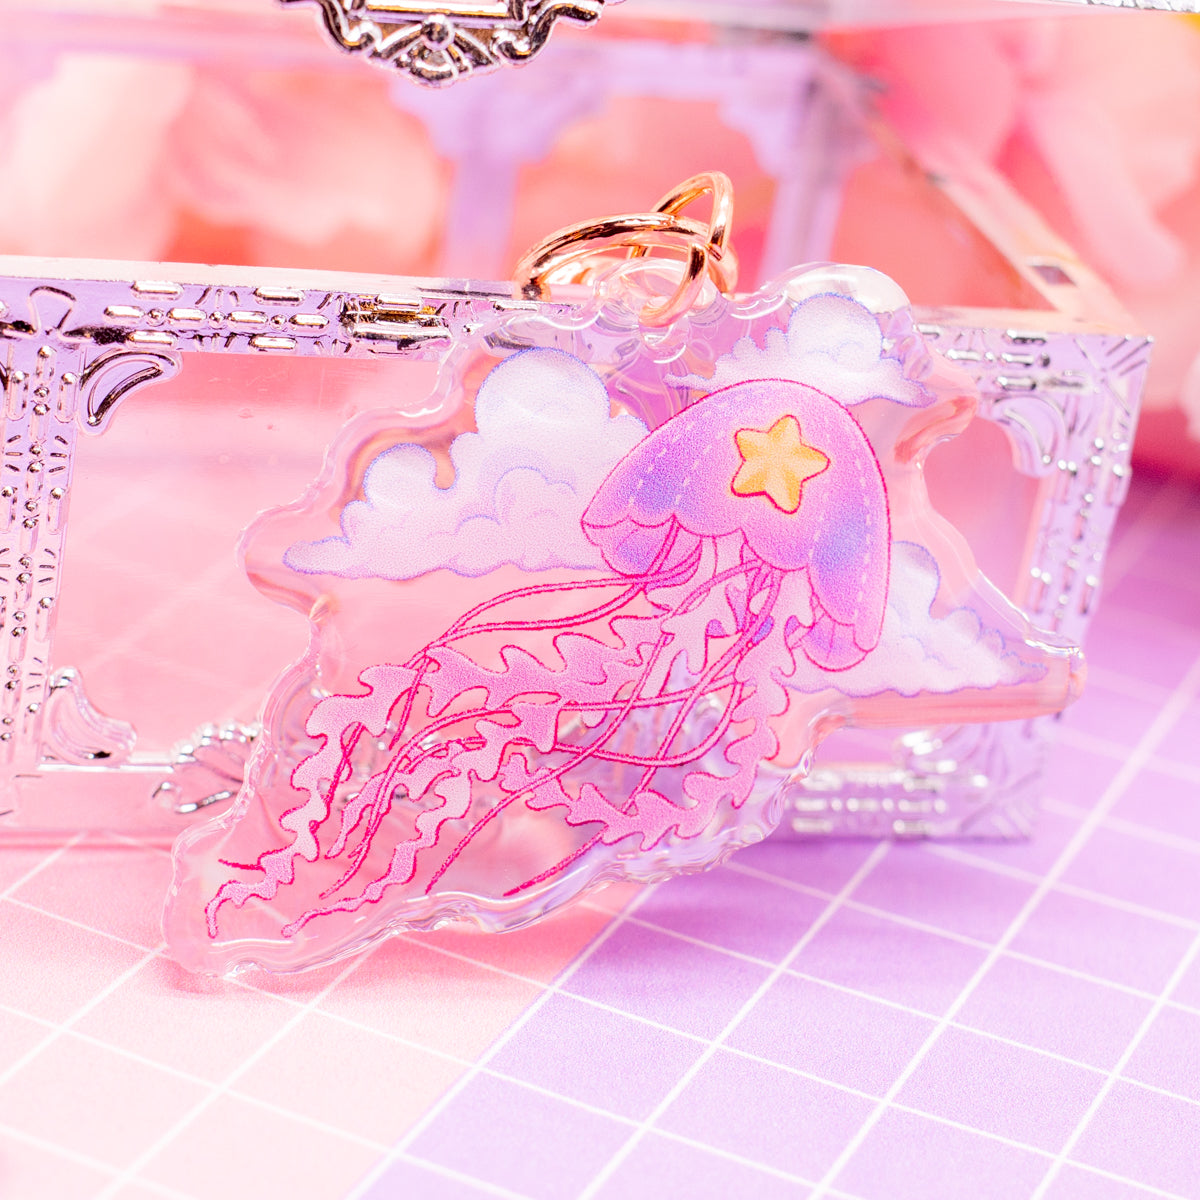 Cosmic Jellyfish - acrylic charm / keychain